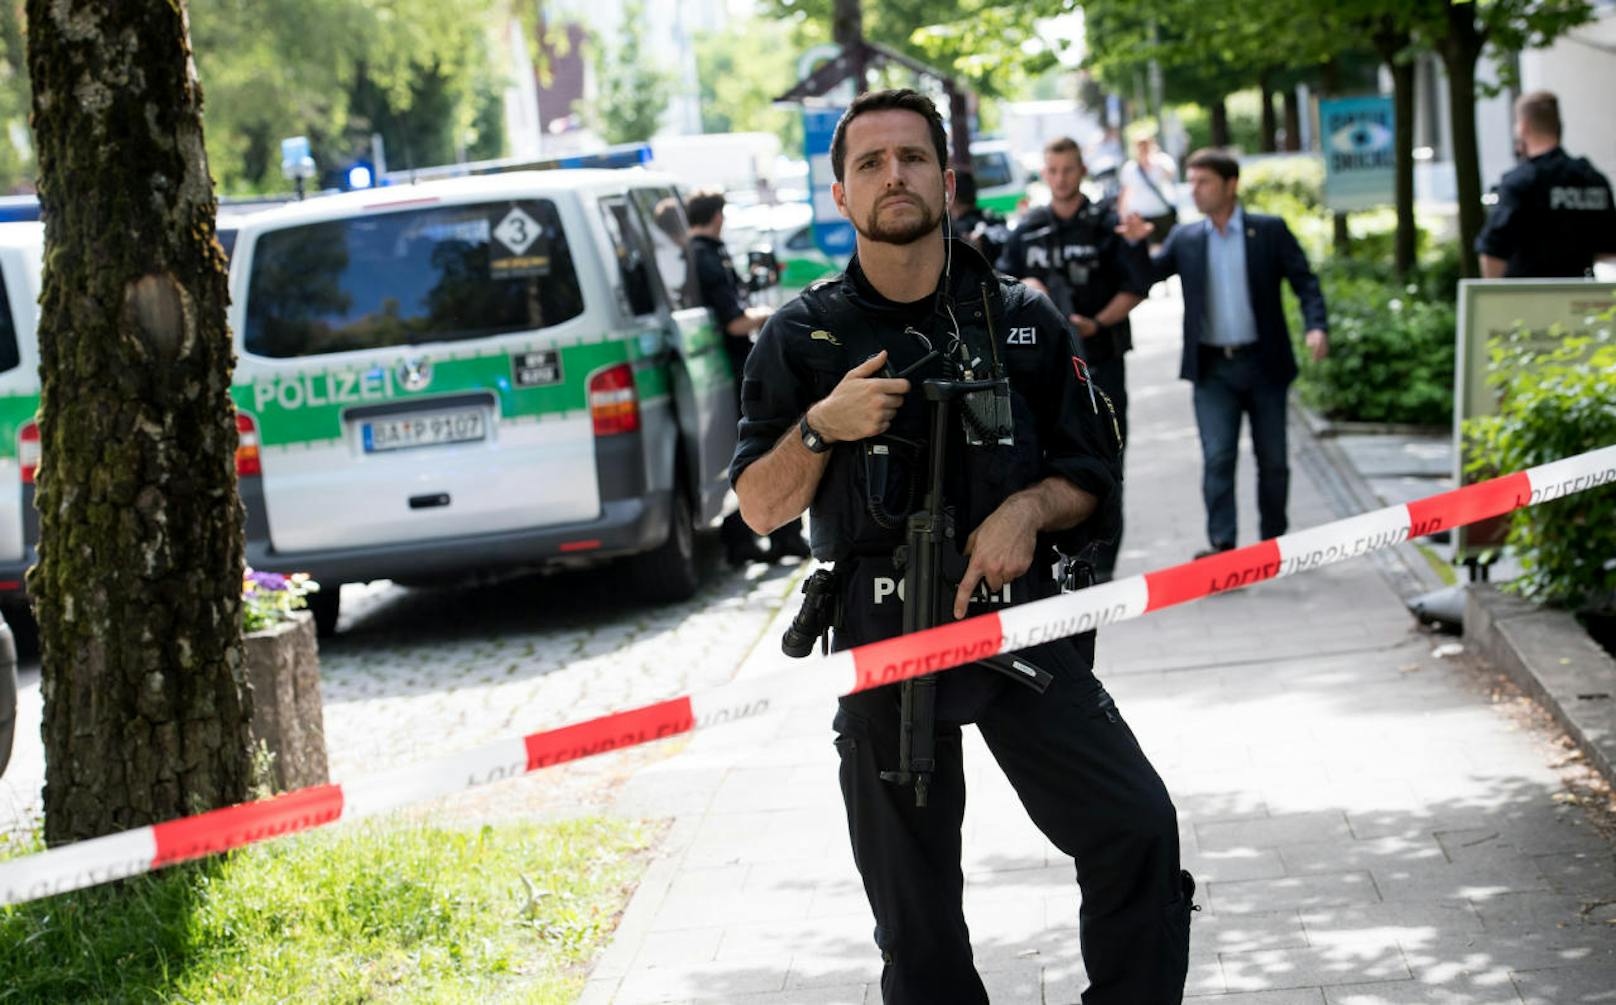 Am S-Bahnhof Unterföhring bei München entwendete ein Mann einer Polizistin die Dienstwaffe und schoss ihr damit in den Kopf. Der Mann ist in Haft.